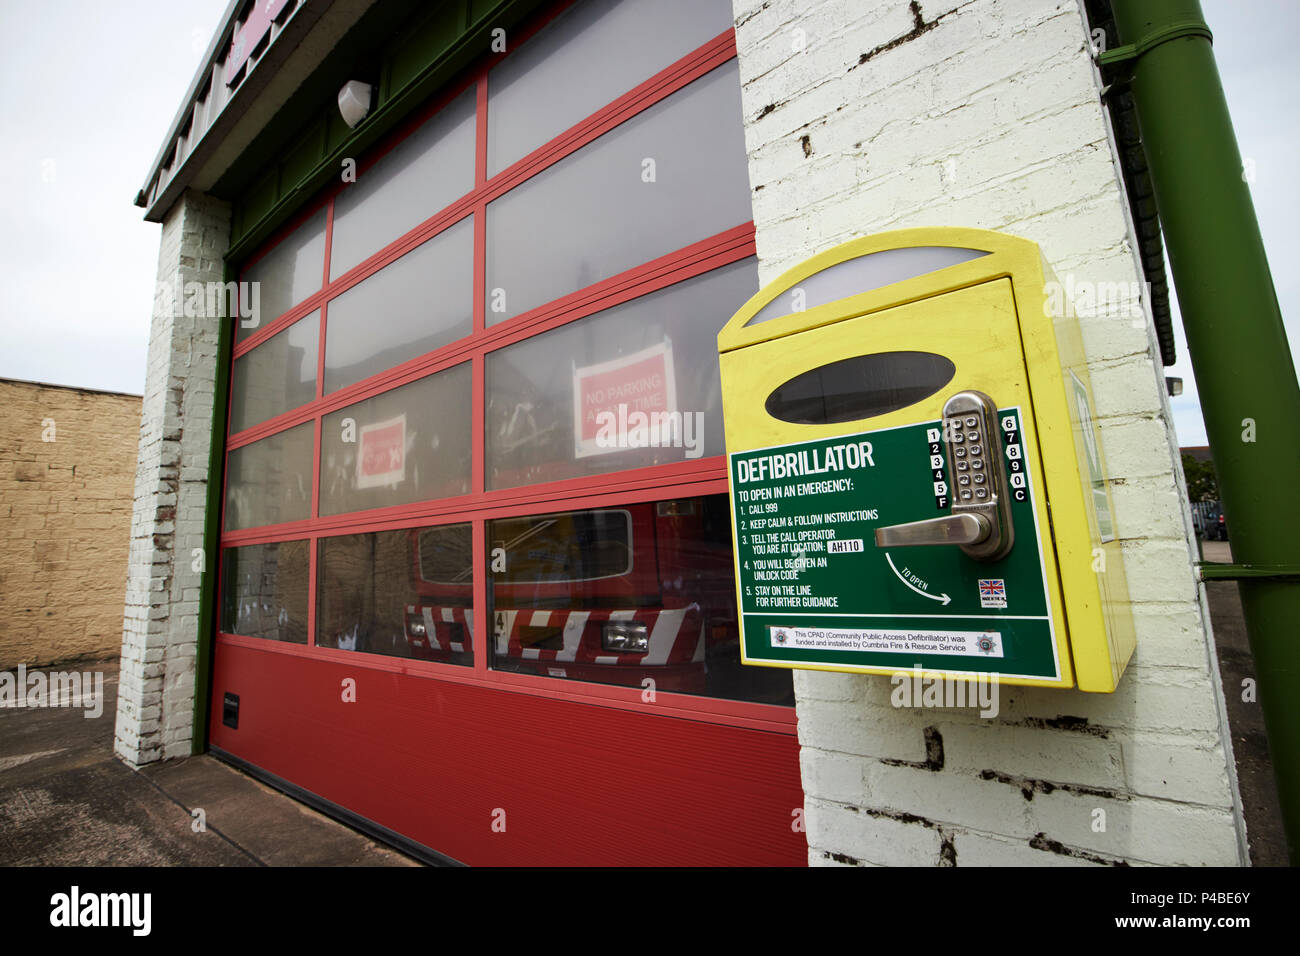 L'accès du public d'urgence défibrillateur avec verrouillage du clavier du petit poste de pompiers locaux cumbria fire and rescue service Aspatria Cumbria England UK Banque D'Images